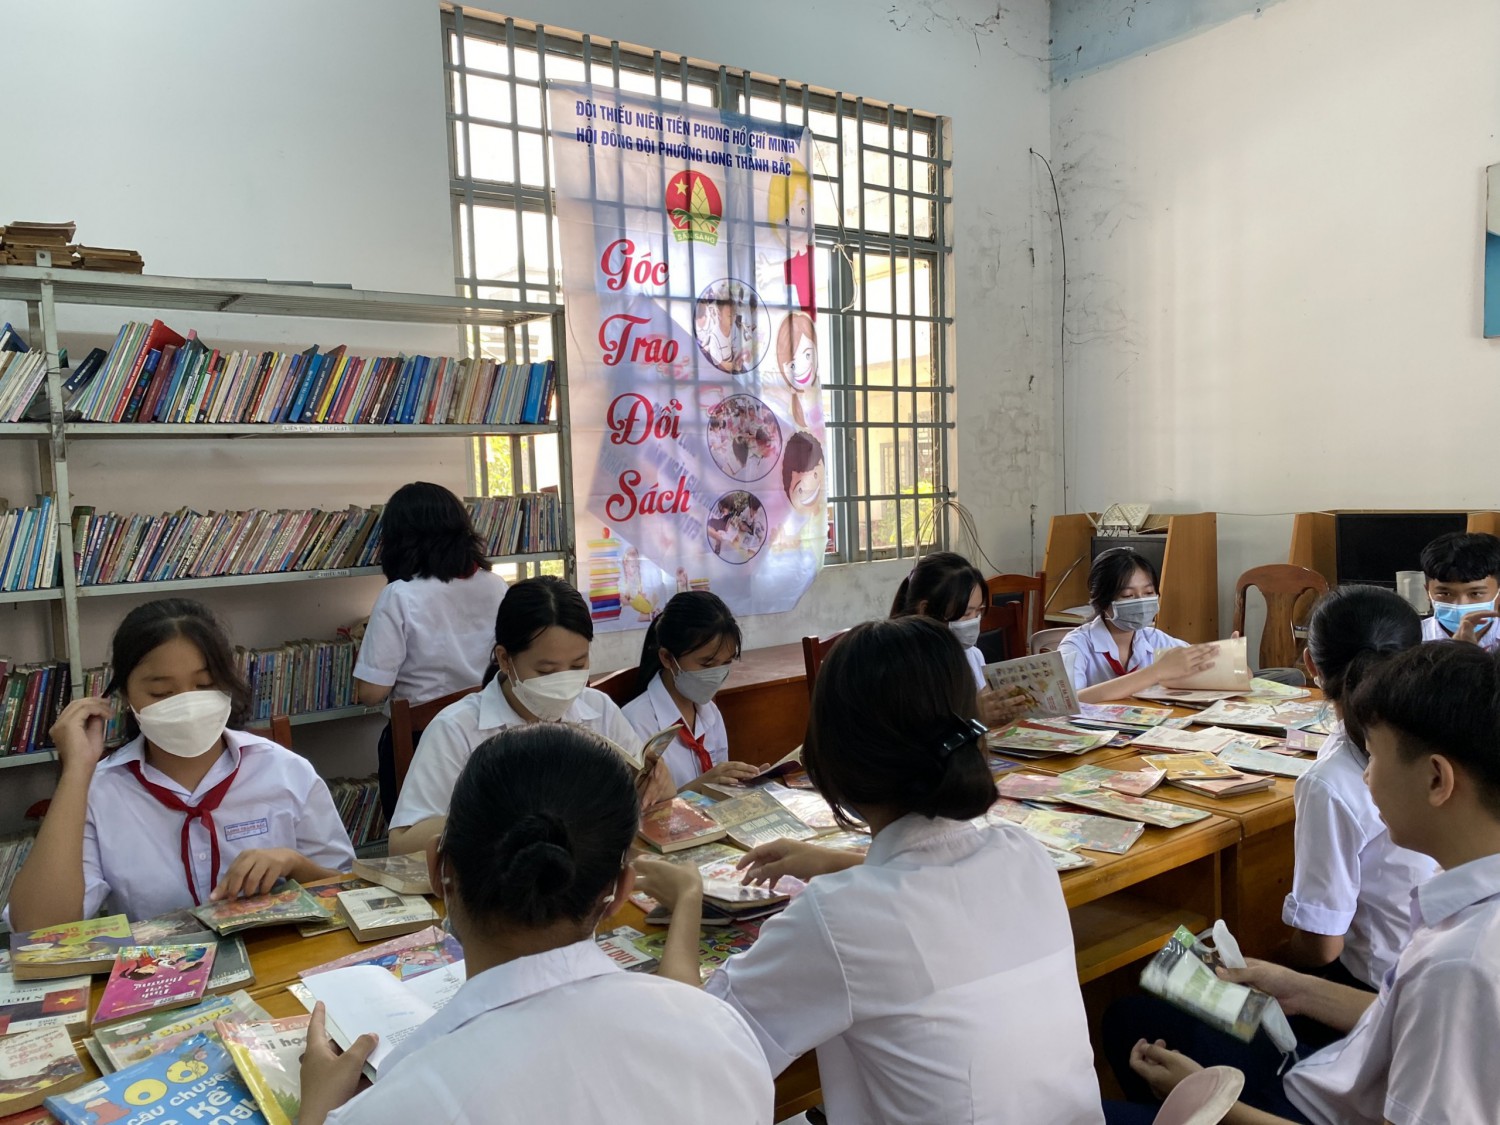 Đoàn thanh niên phường Long Thành Bắc tổ chức ngày hội đọc sách và Góc trao đổi sách năm 2022.